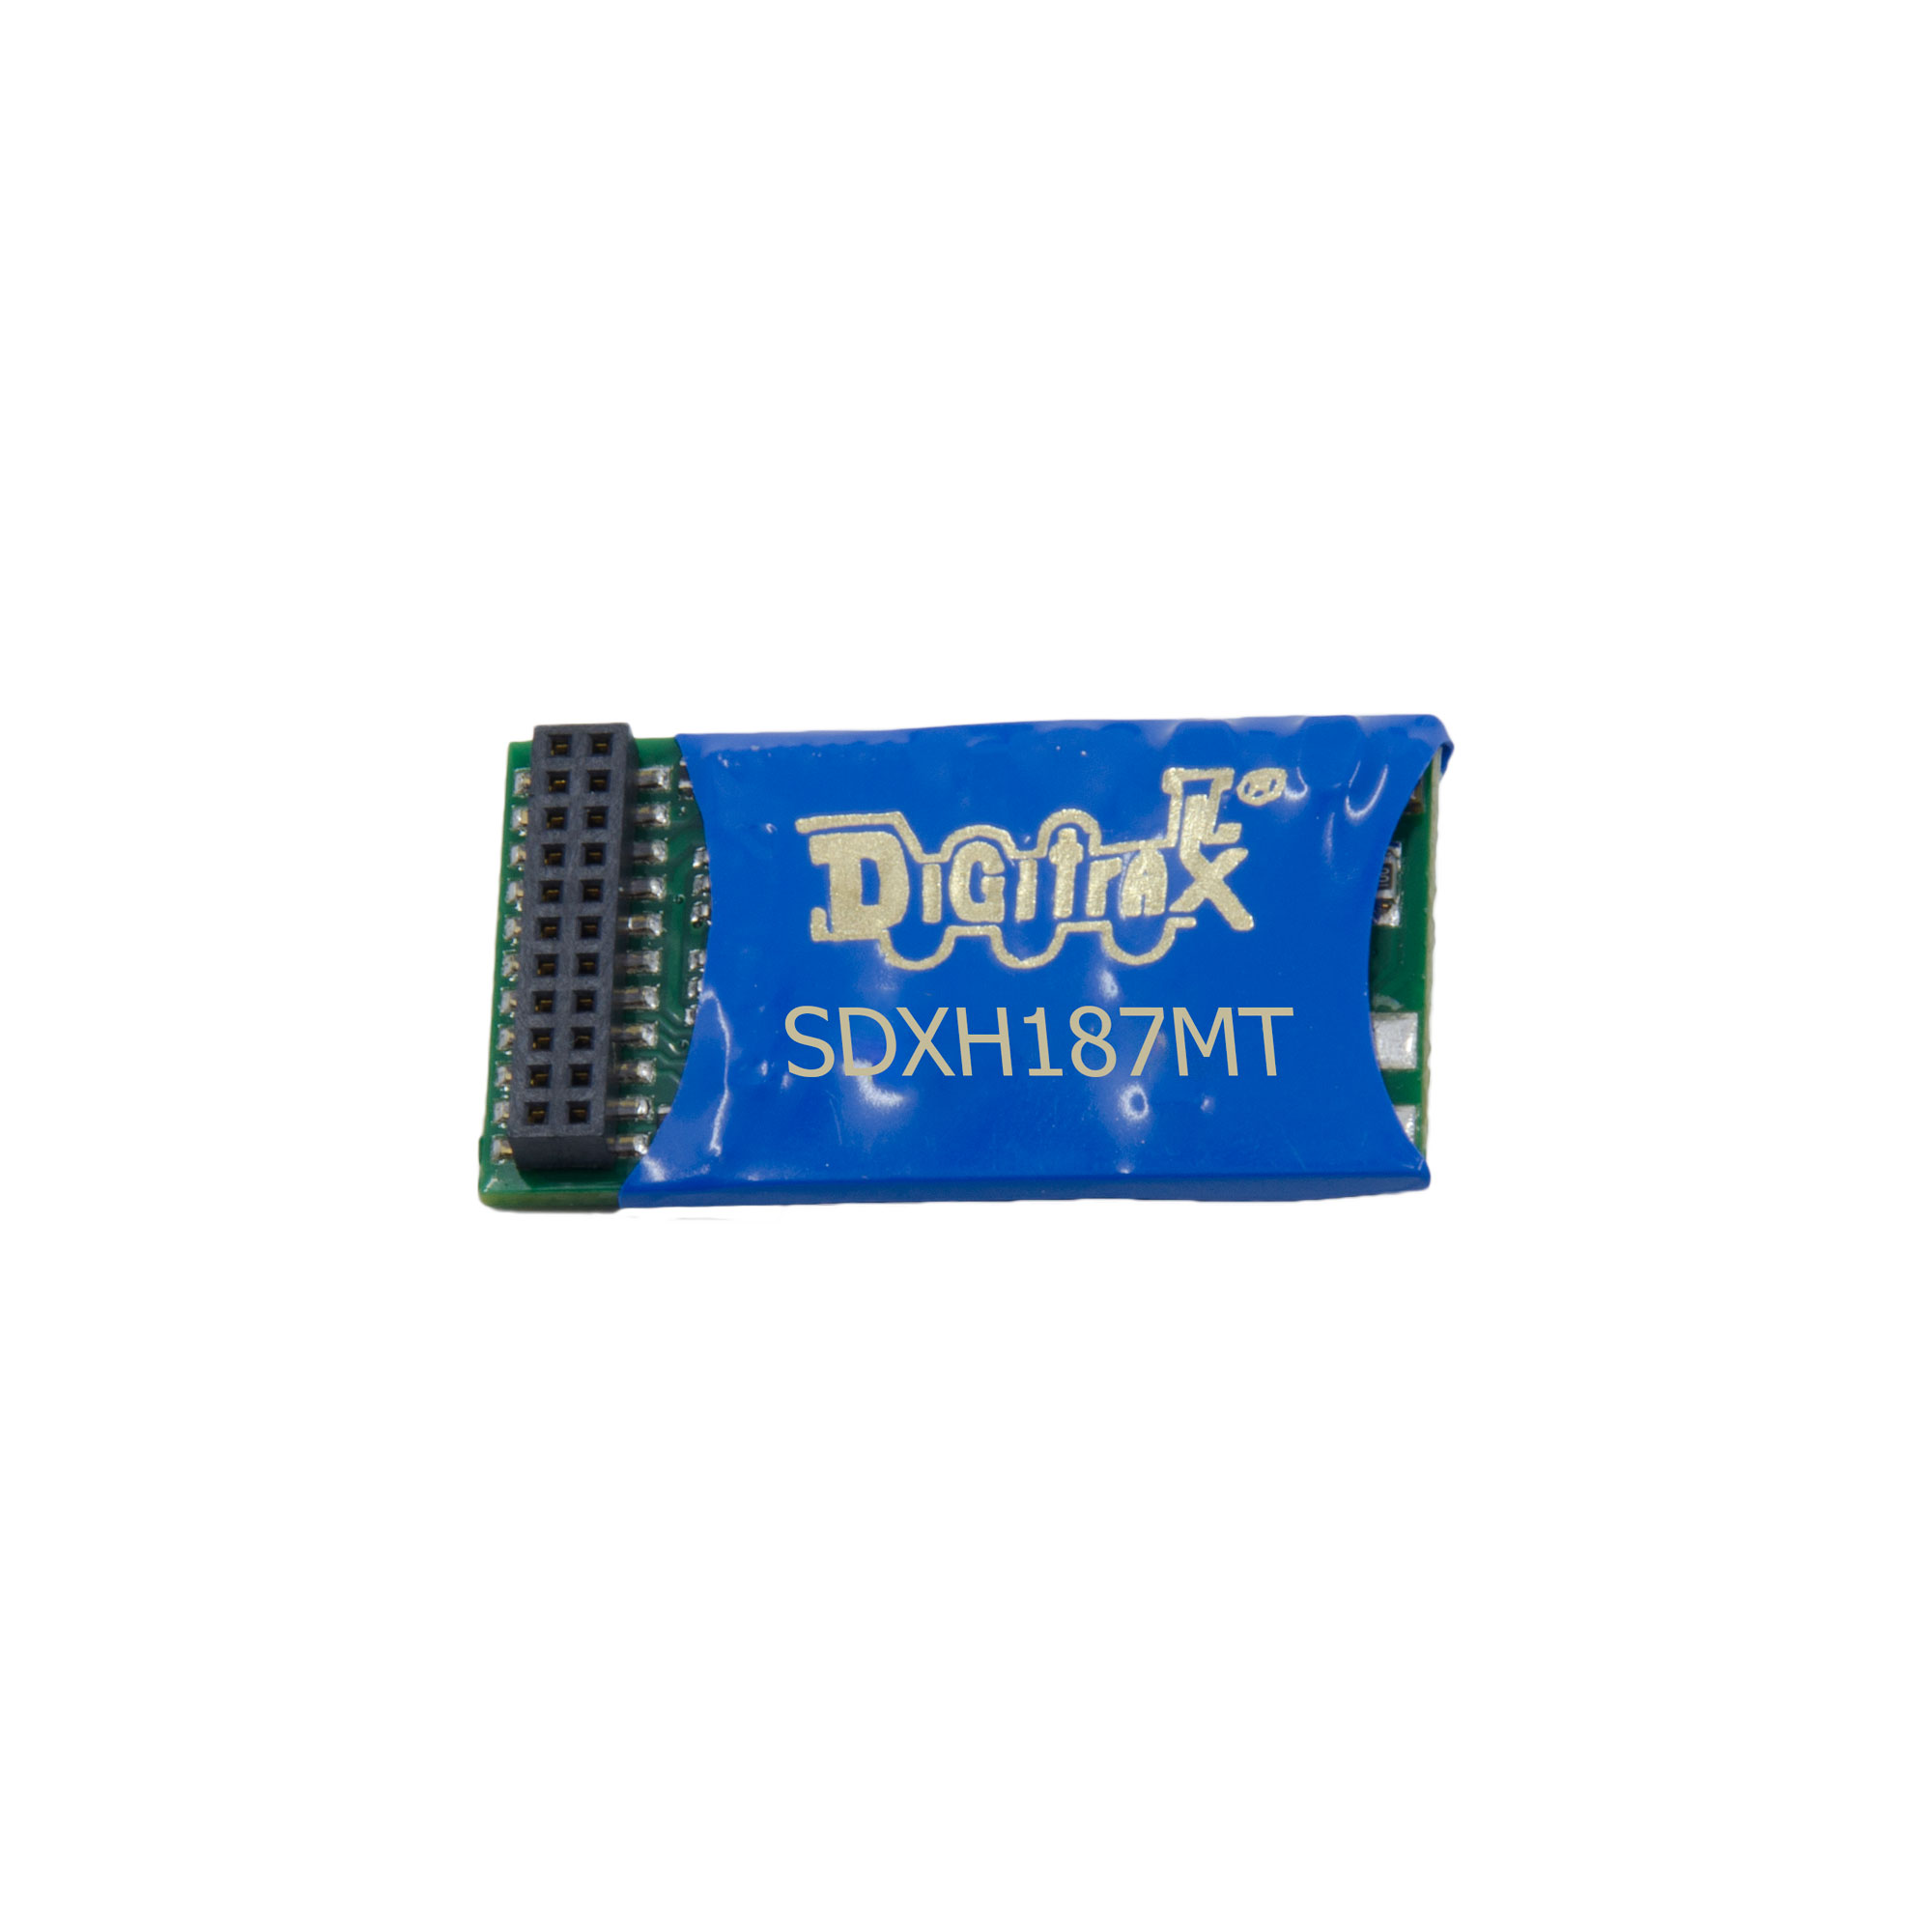 Digitrax SDXH187MT - HO Series 7 Sound Decoder